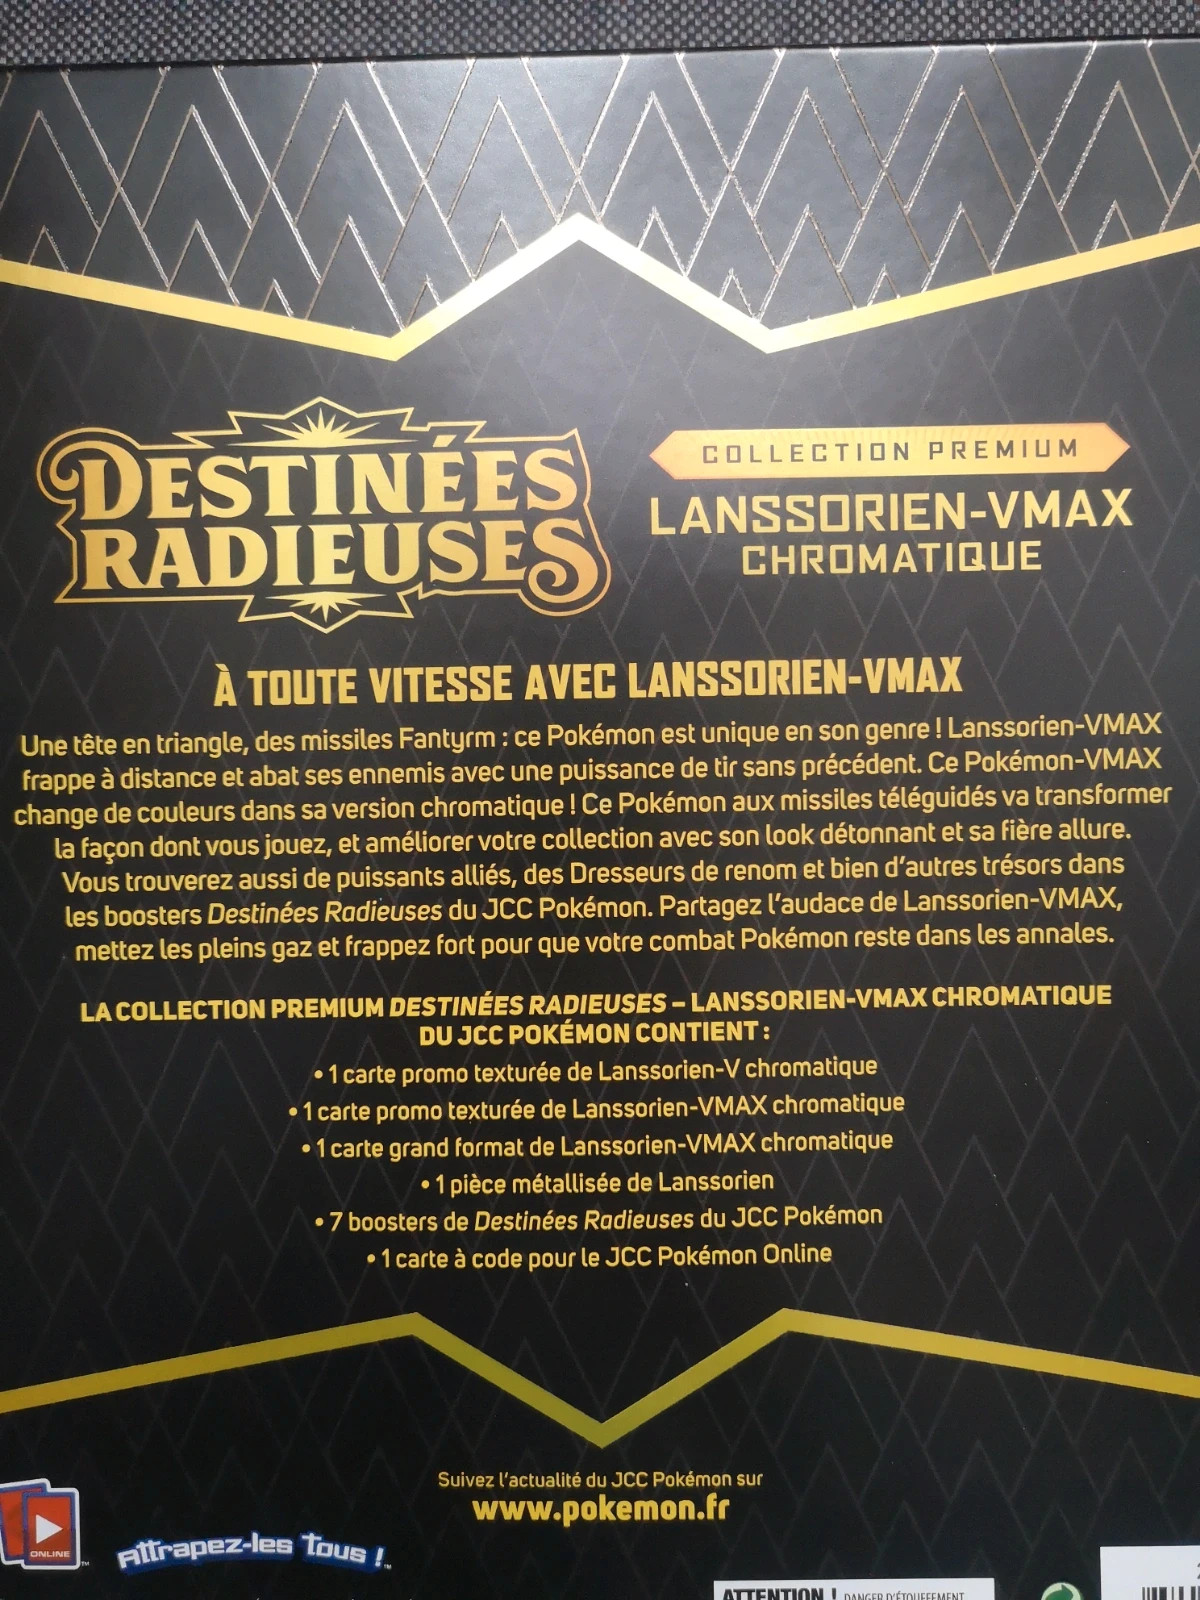 Collections Premium Destinées Radieuses – Lanssorien-VMAX chromatiques